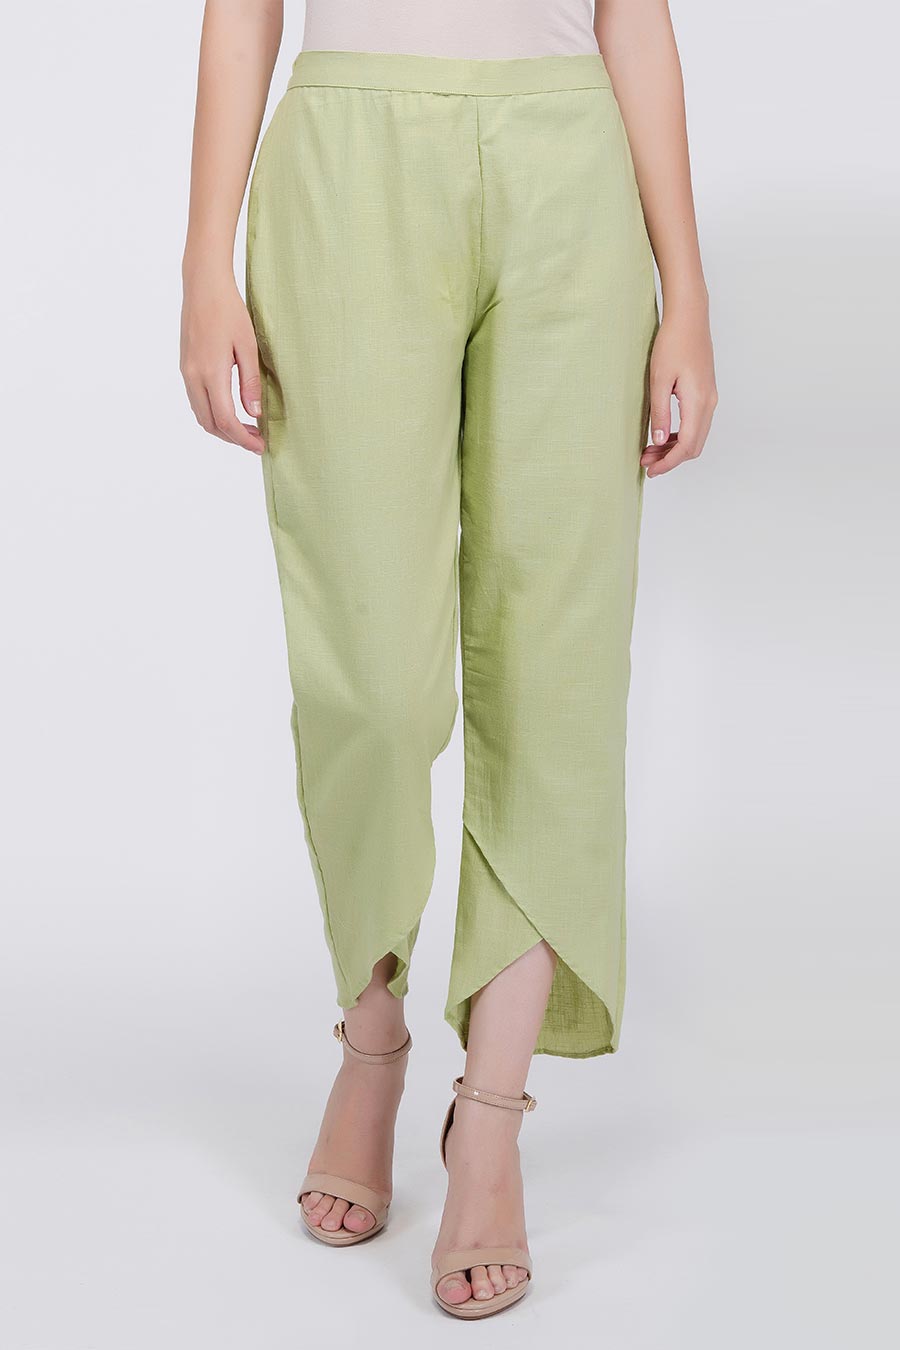 Green High-Low Kurta & Pants Set